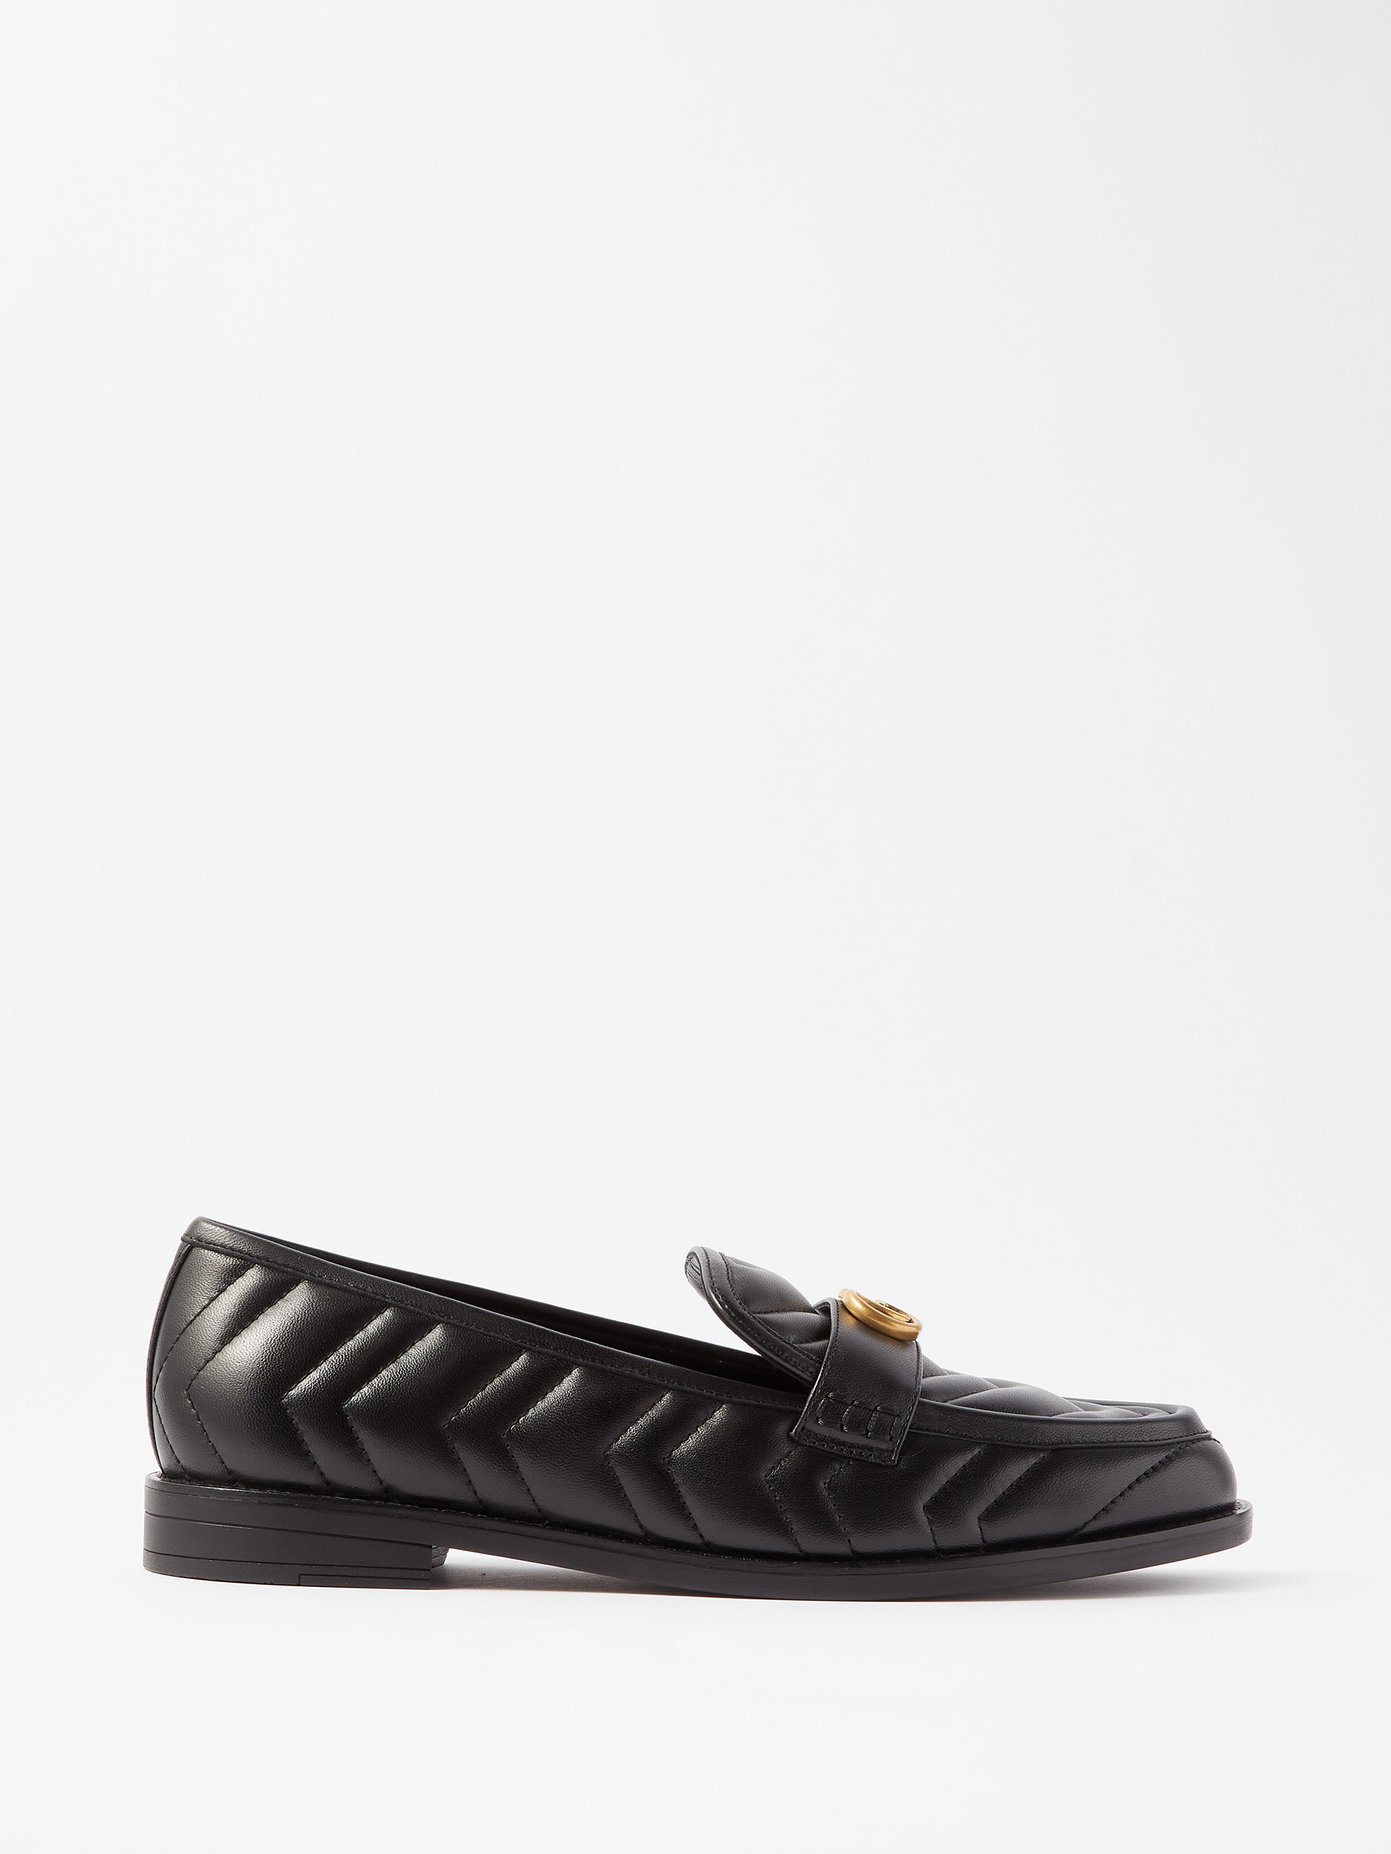 구찌 마몽 퀼팅 로퍼 Gucci Black Marmont quilted leather loafers